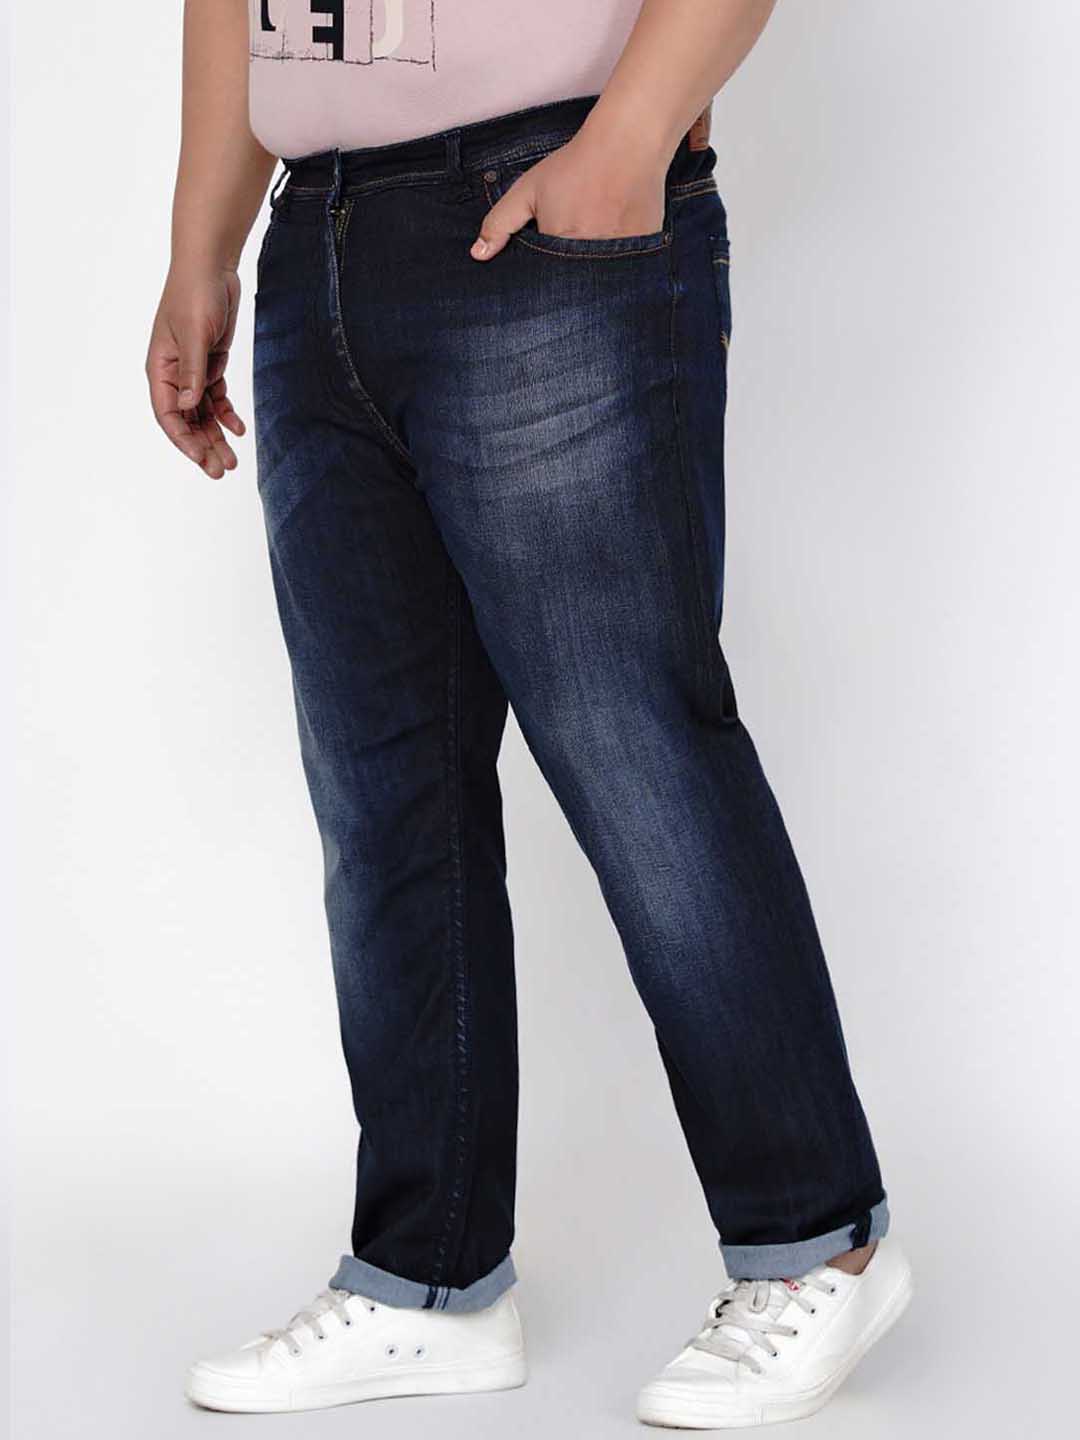 affordables/jeans/JPJ2556/jpj2556-4.jpg